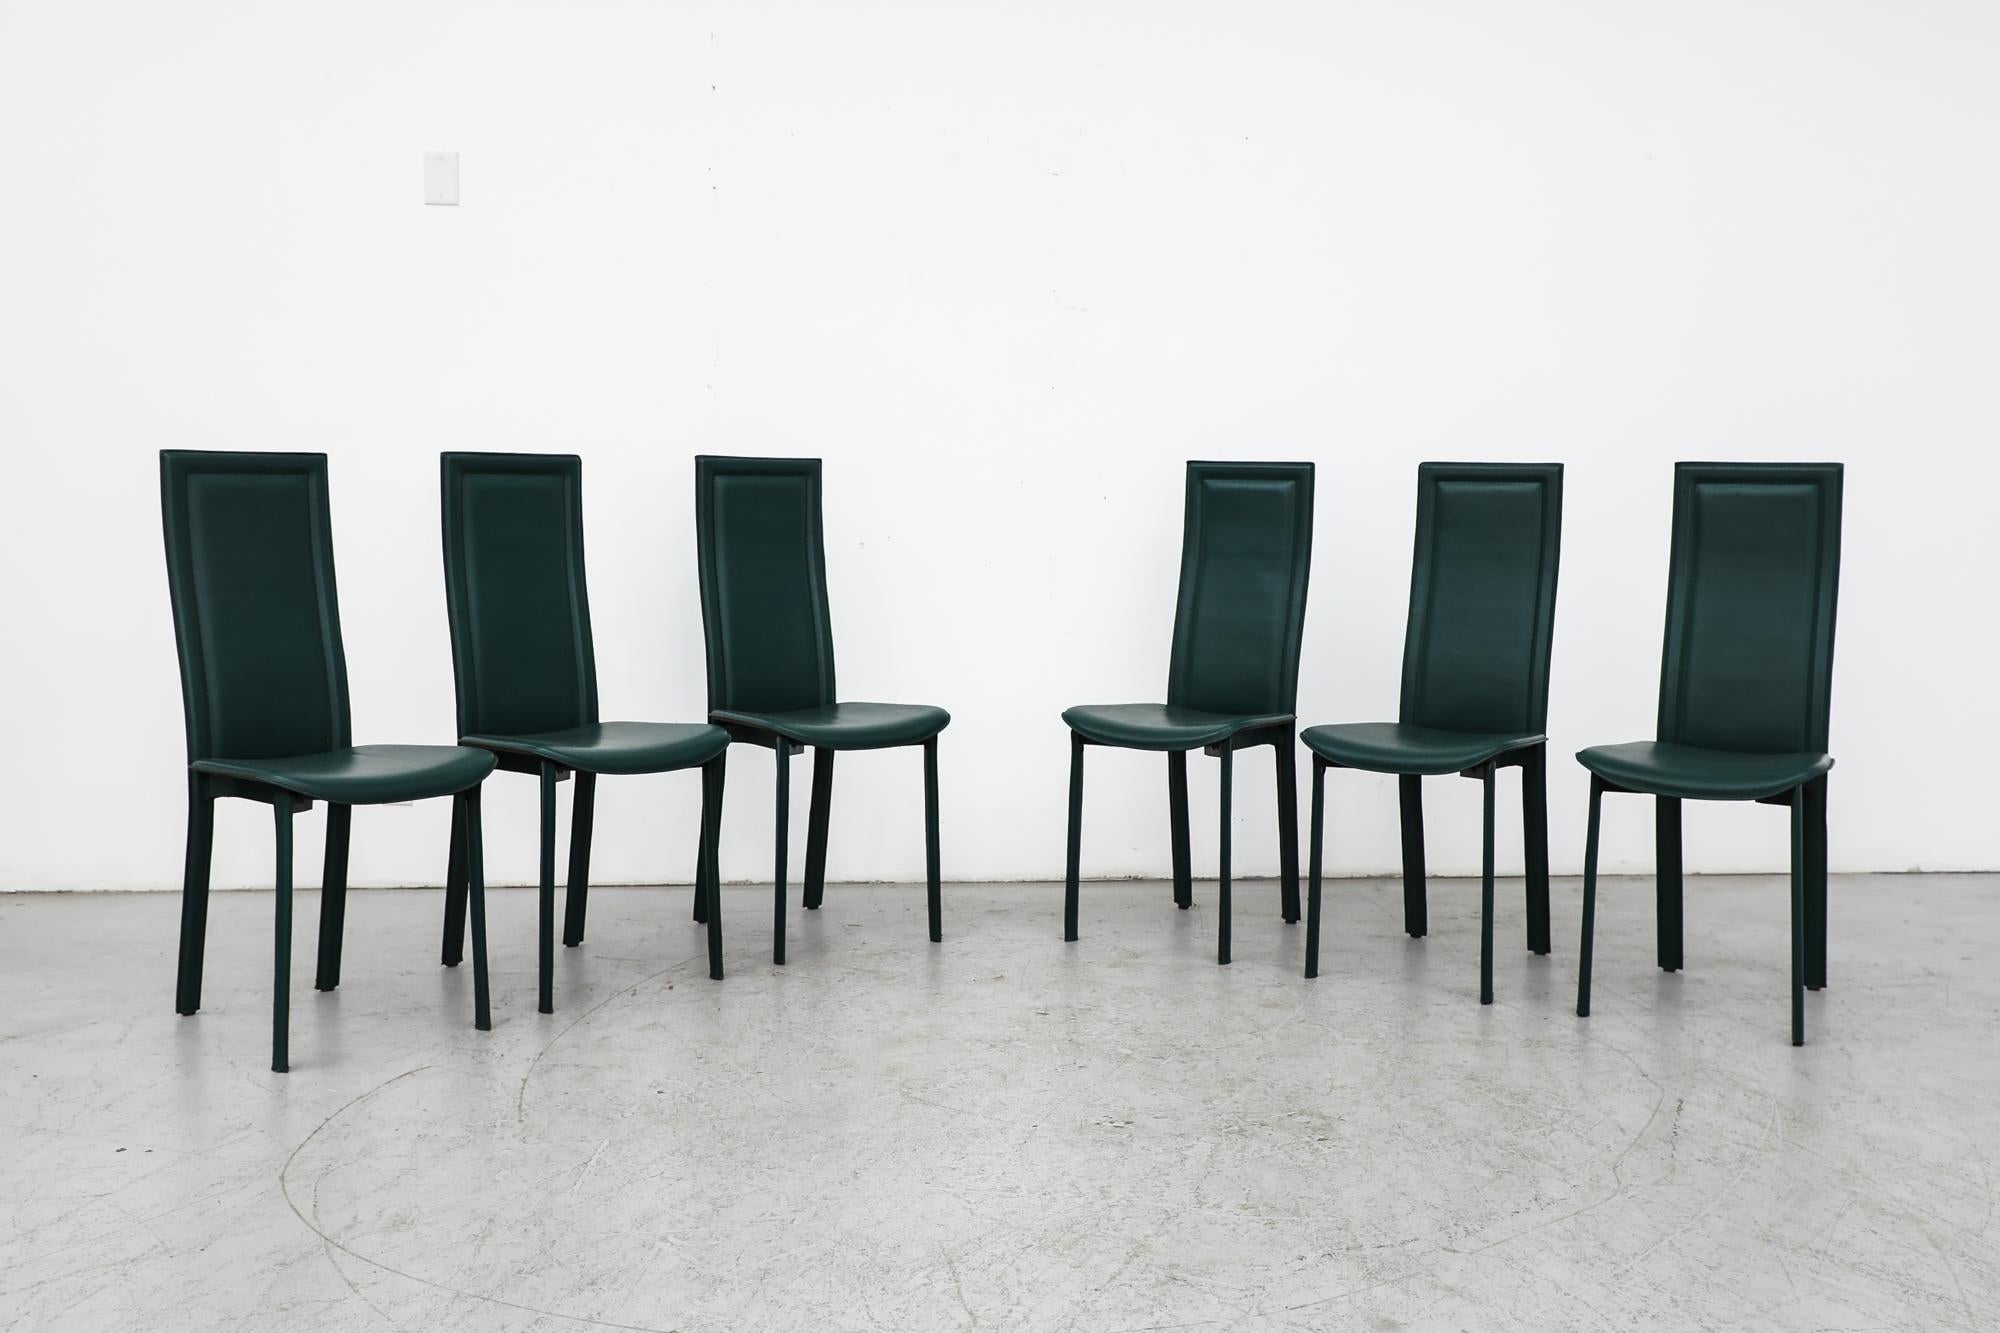 Lot de 6 chaises de salle à manger CATTELAN ITALIA à haut dossier en cuir vert et pieds enveloppés de cuir. 1980s. En état d'origine avec une usure visible, notamment des piqûres et une décoloration sur le chrome et une patine sur le cuir. L'usure